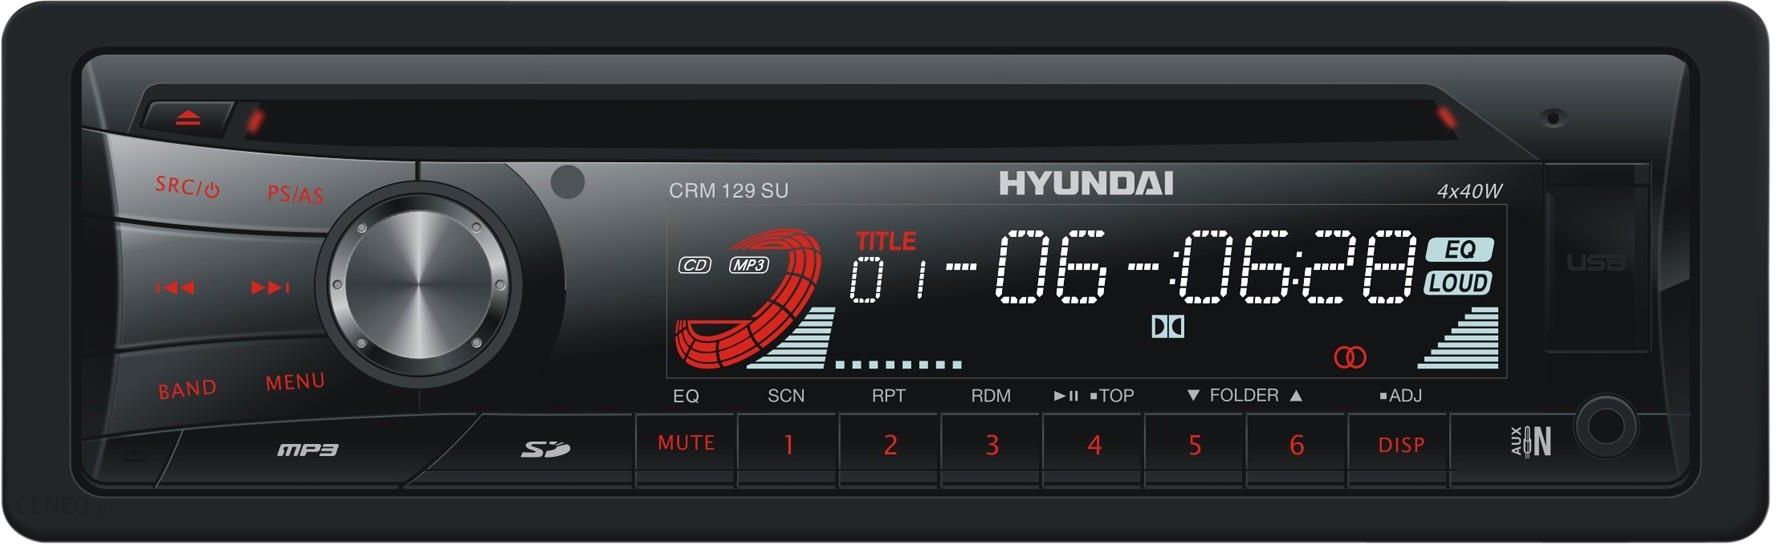 Radioodtwarzacz samochodowy Hyundai CRM 129 SU Opinie i